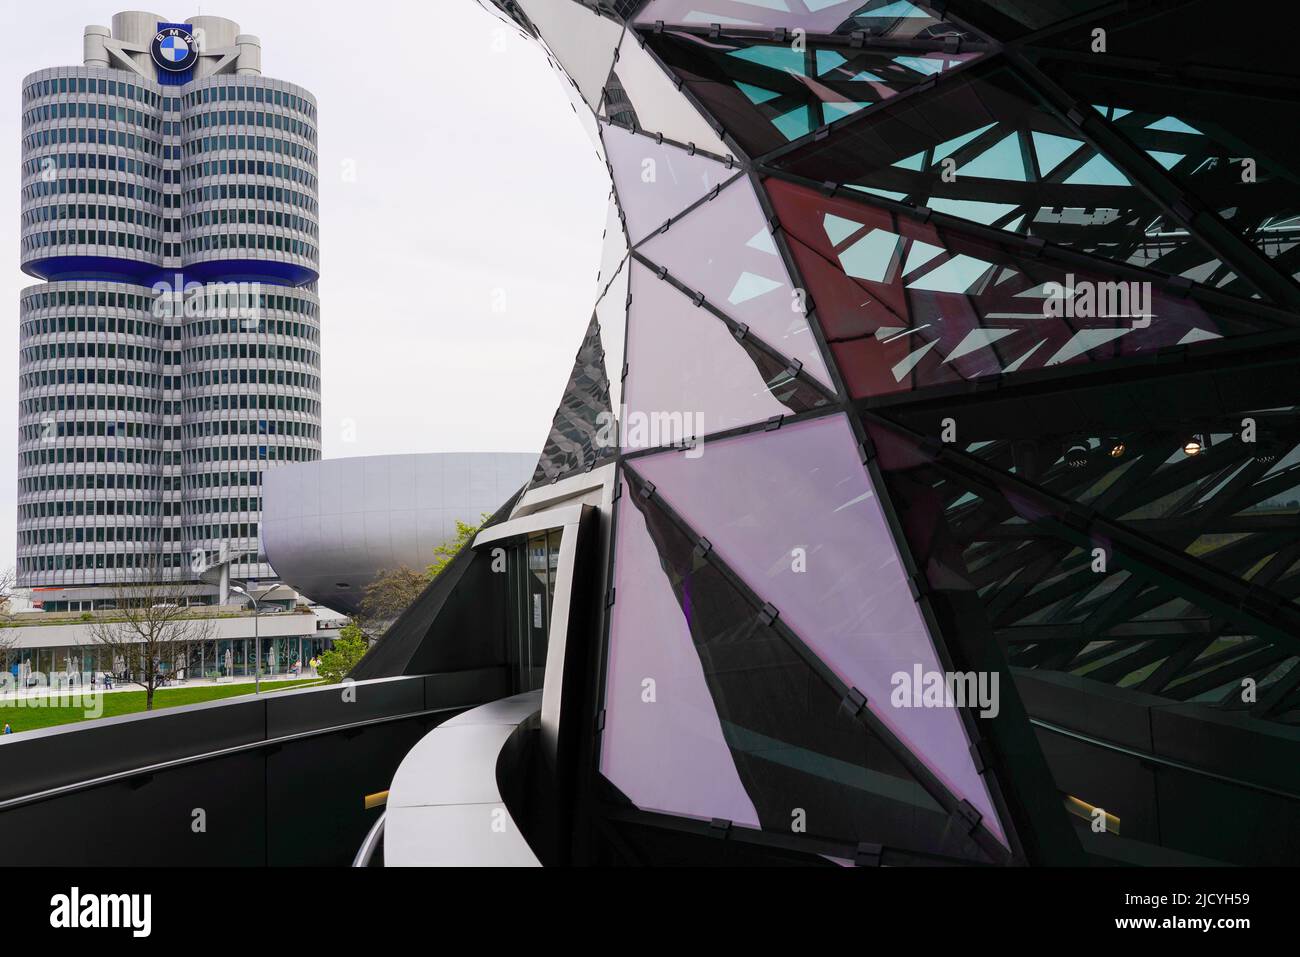 La torre BMW, el BMW de cuatro cilindros es el edificio principal de la administración y el hito del fabricante de coches BMW en Munich, Alemania, 19.4.22 Foto de stock